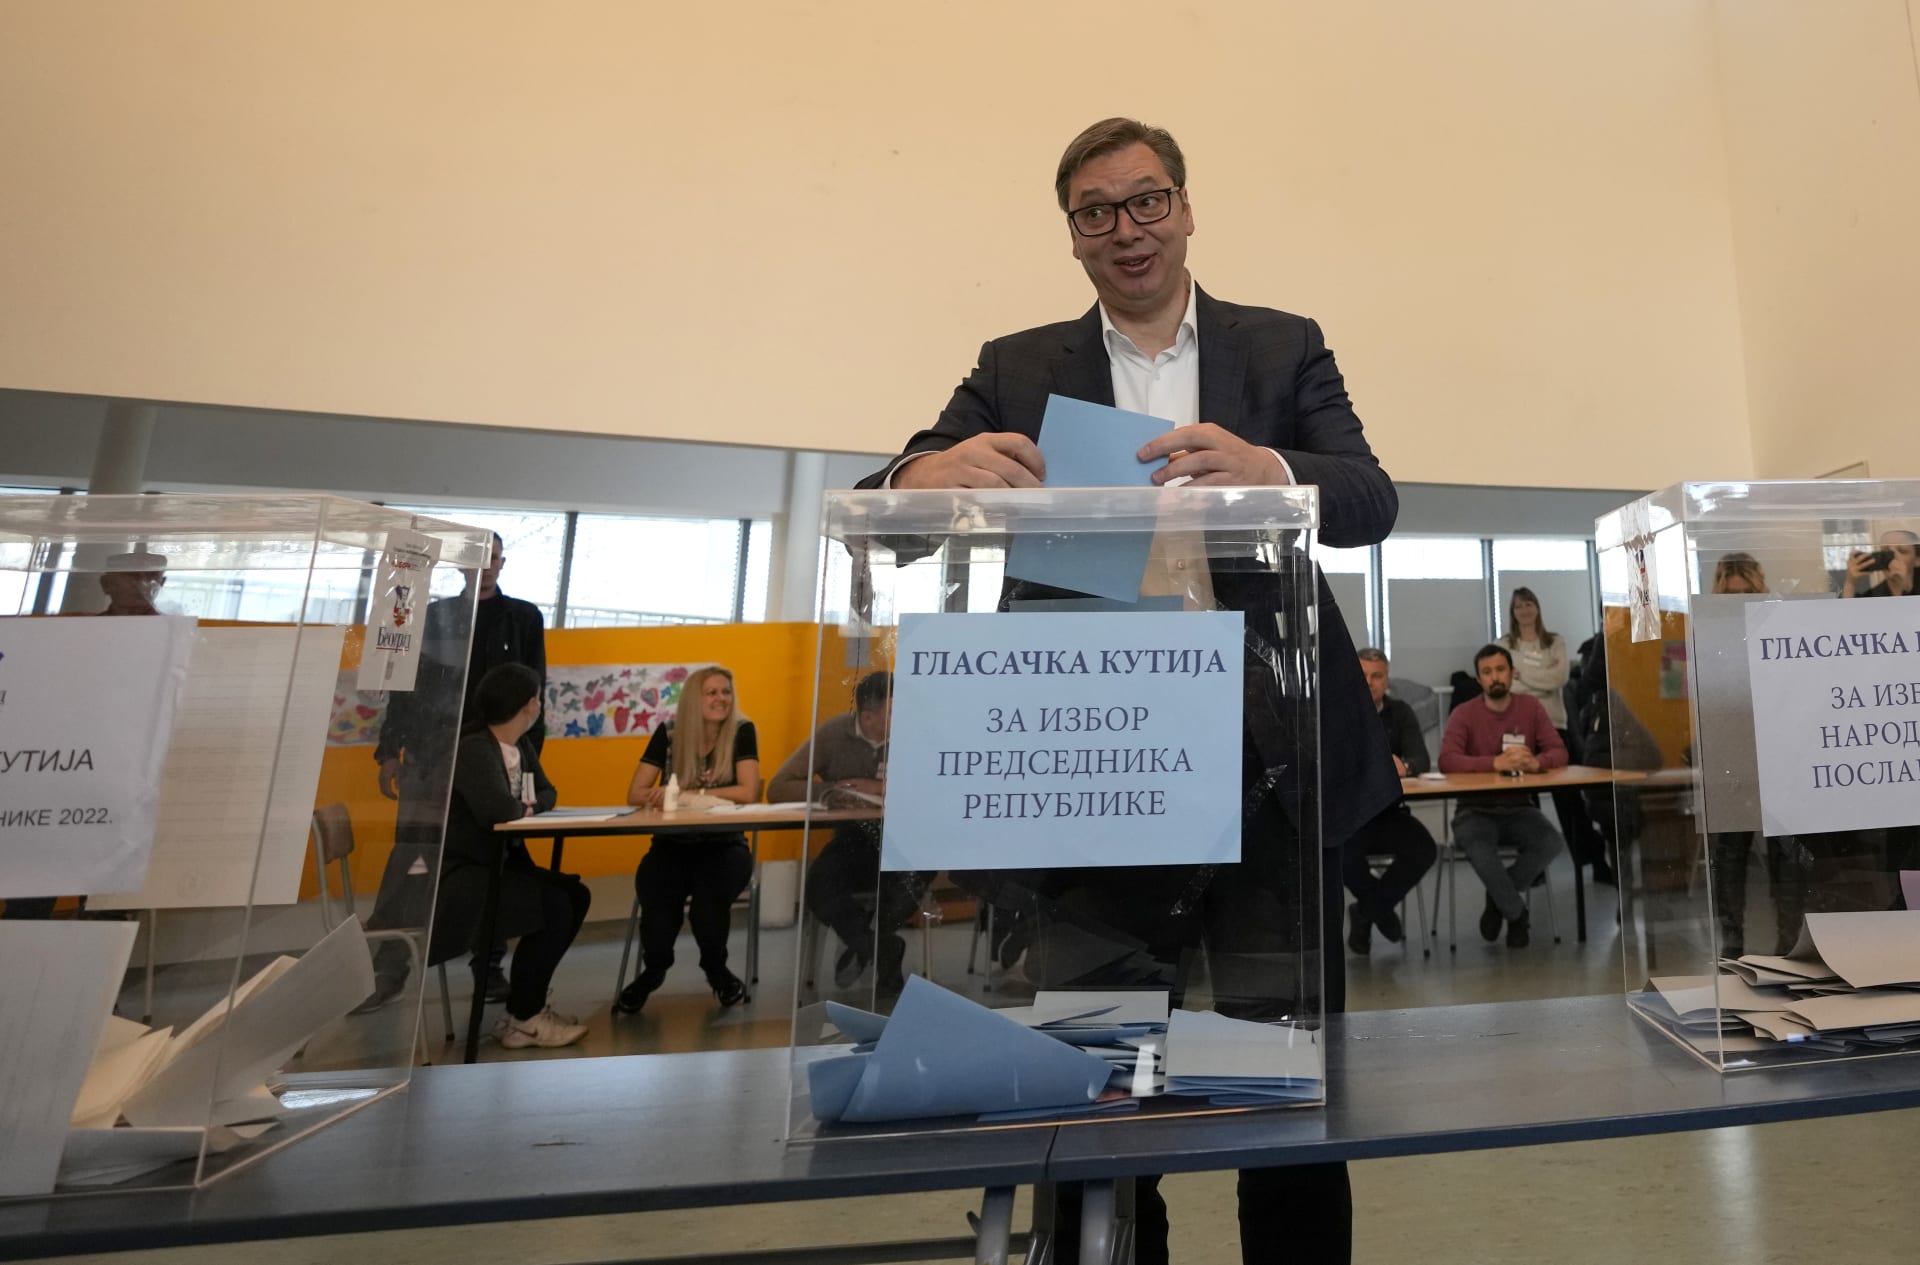 V srbských prezidentských a parlamentních volbách jasně zvítězila stávající hlava státu Aleksandar Vučić a jeho Srbská pokroková strana (SNS). 